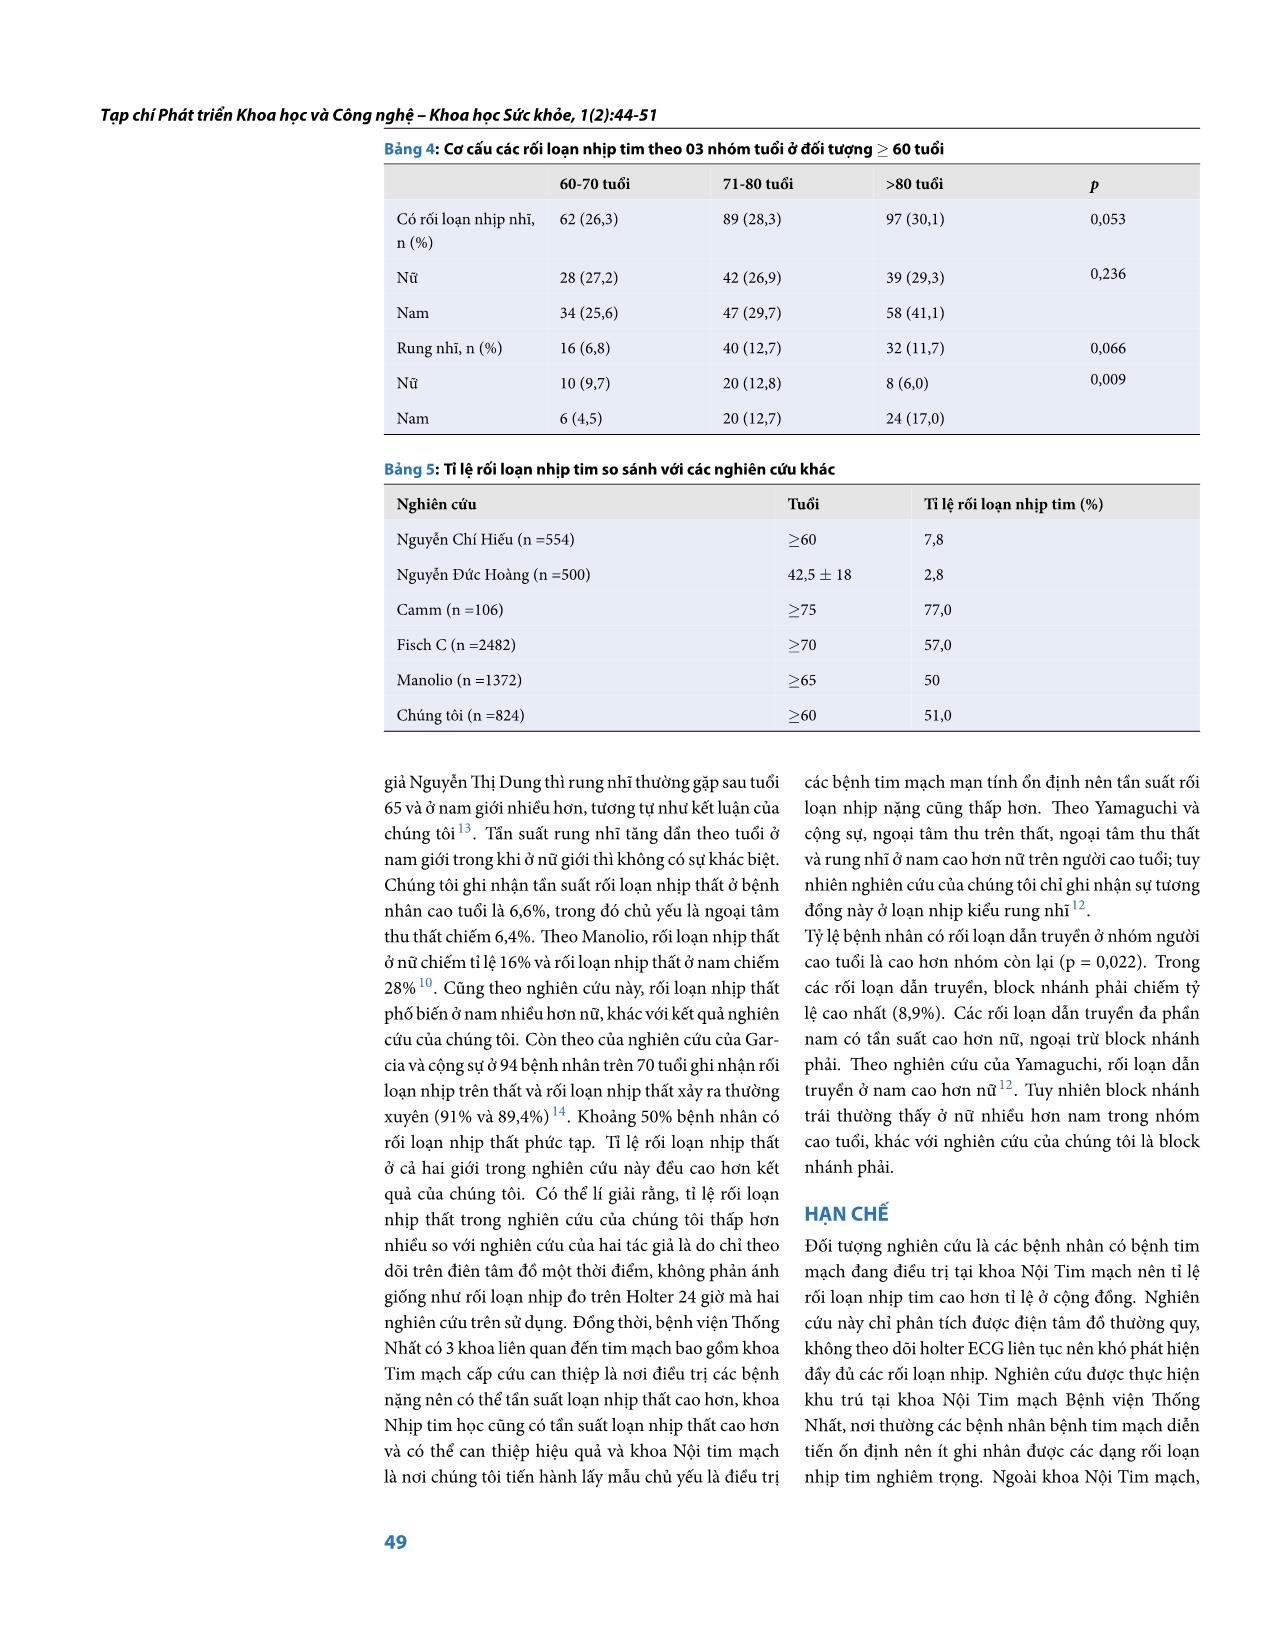 Tỉ lệ các rối loạn nhịp tim trên bệnh nhân cao tuổi điều trị nội trú tại khoa tim mạch - Bệnh viện Thống Nhất trang 6